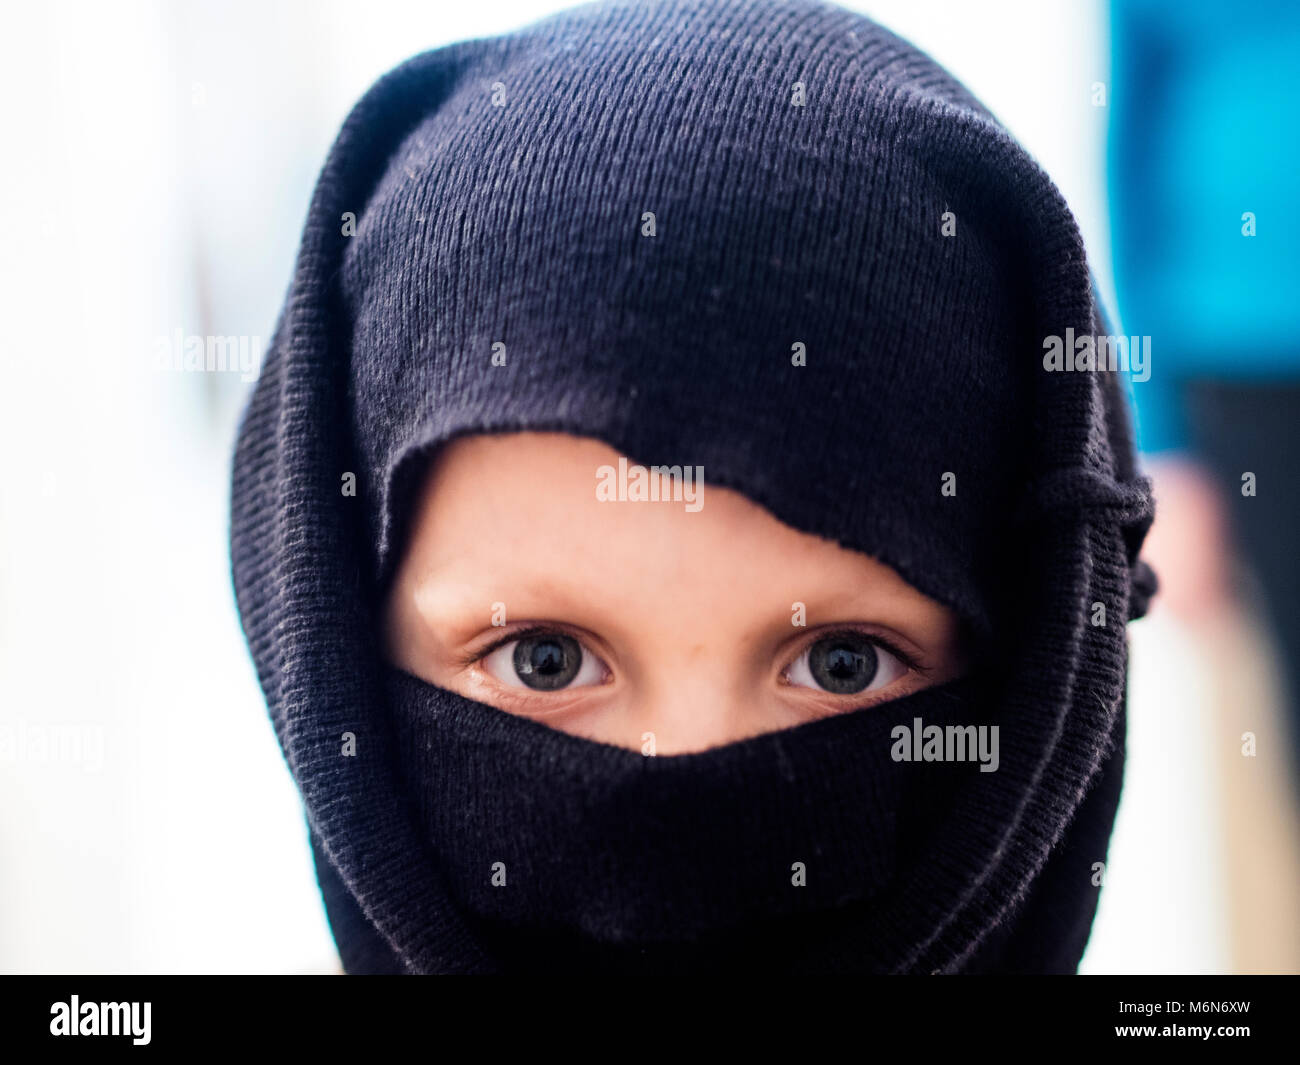 53 fotos de stock e banco de imagens de White Ninja Mask - Getty Images